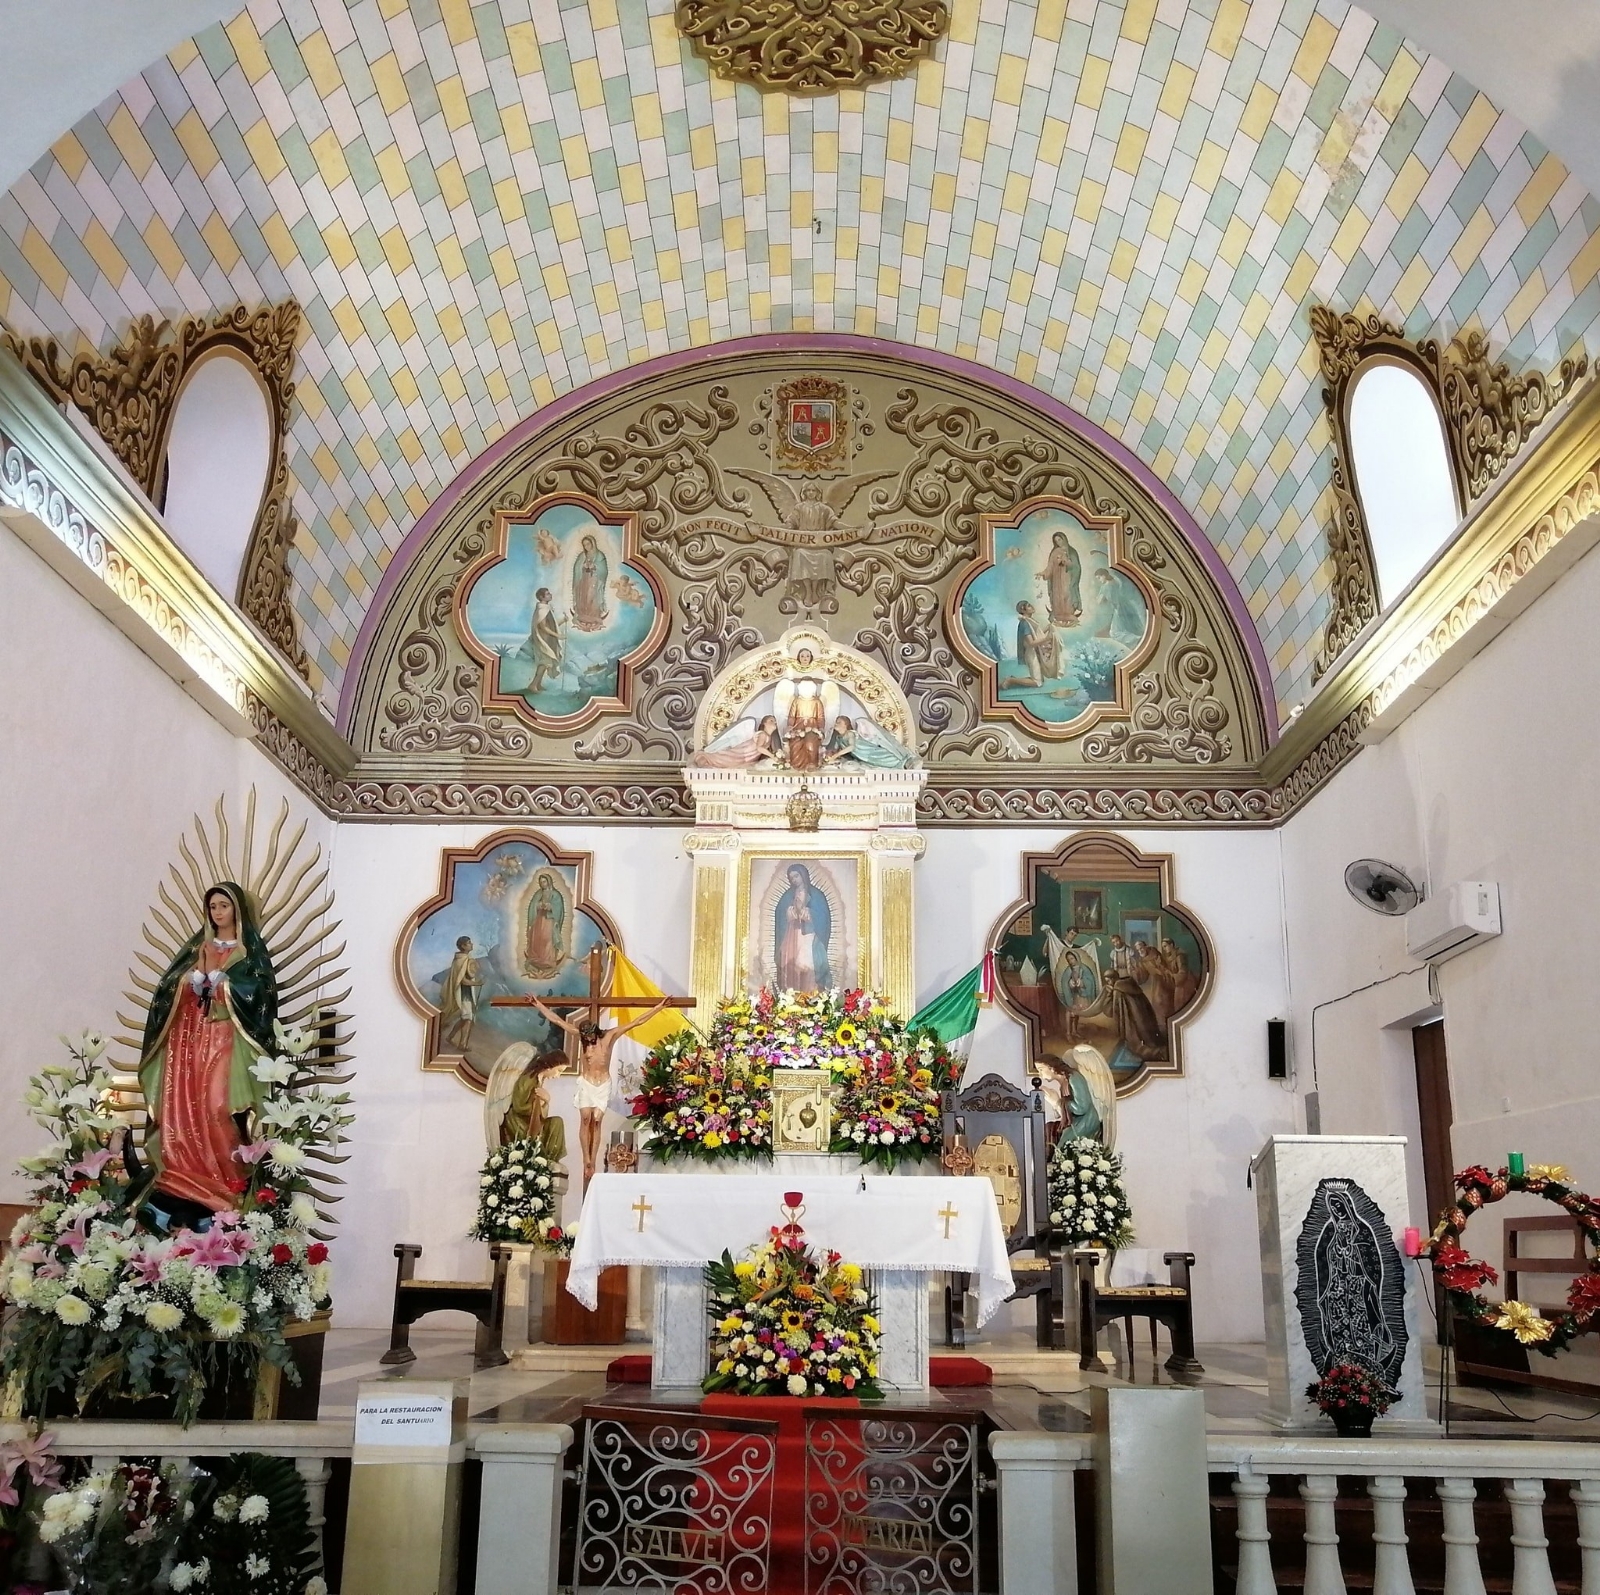 El santuario, el cual está ubicado en el Barrio de Guadalupe en San Francisco de Campeche, es la más antigua de la ciudad,